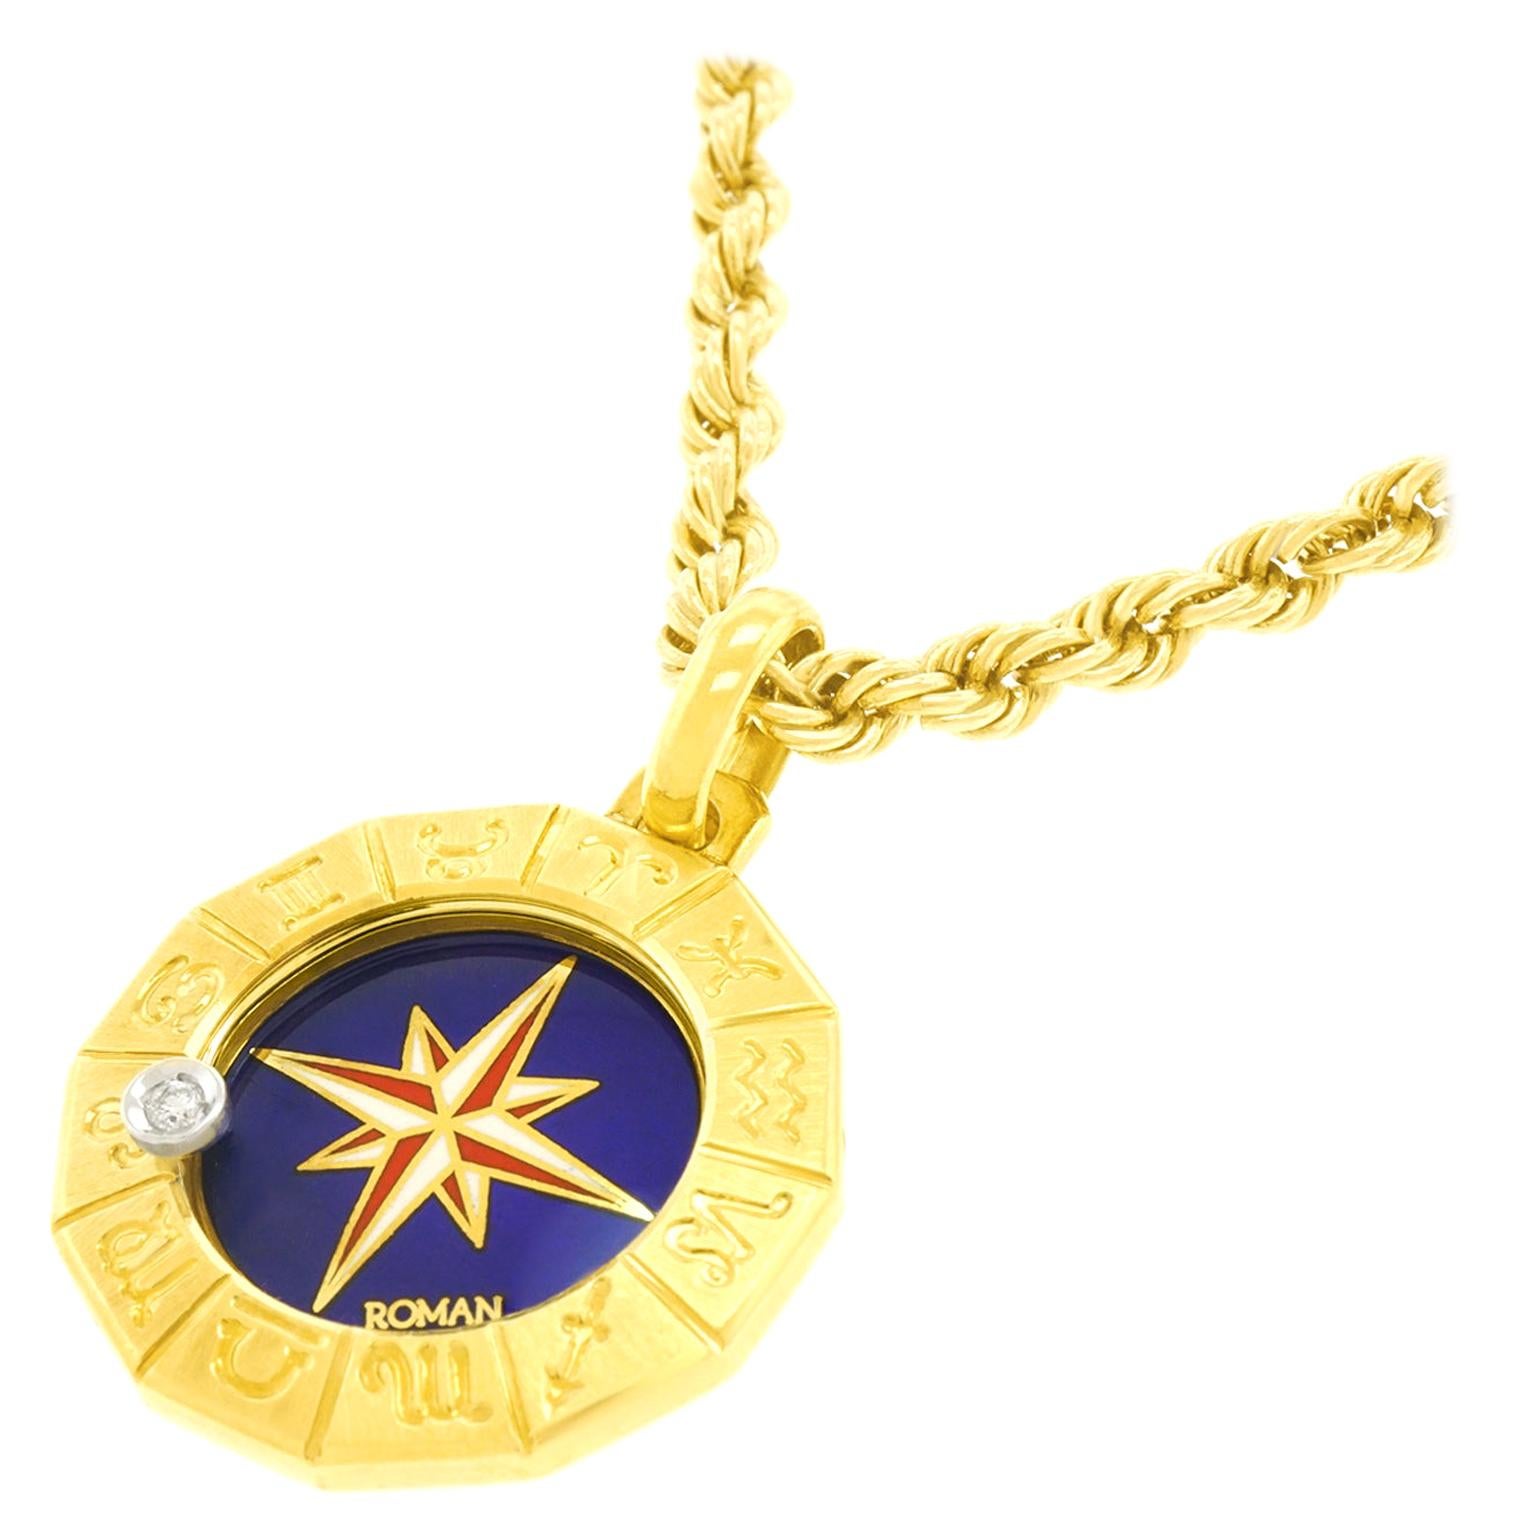  Zodiac Gold Pendant For Sale